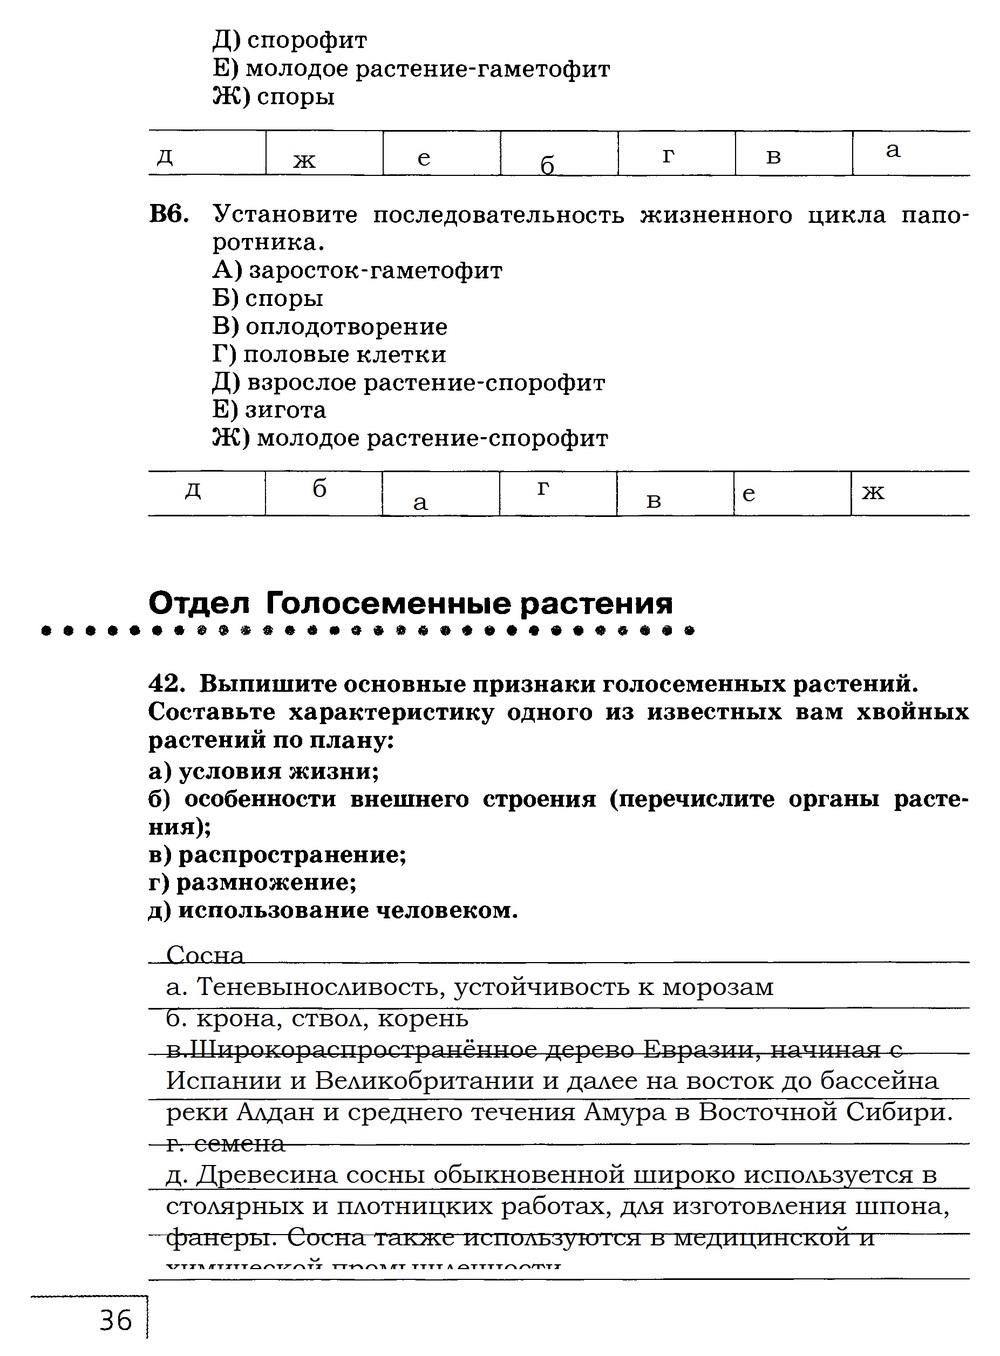 Рабочая тетрадь, 7 класс, Захаров В.Б., Сонин Н.И., 2015, задание: стр. 36